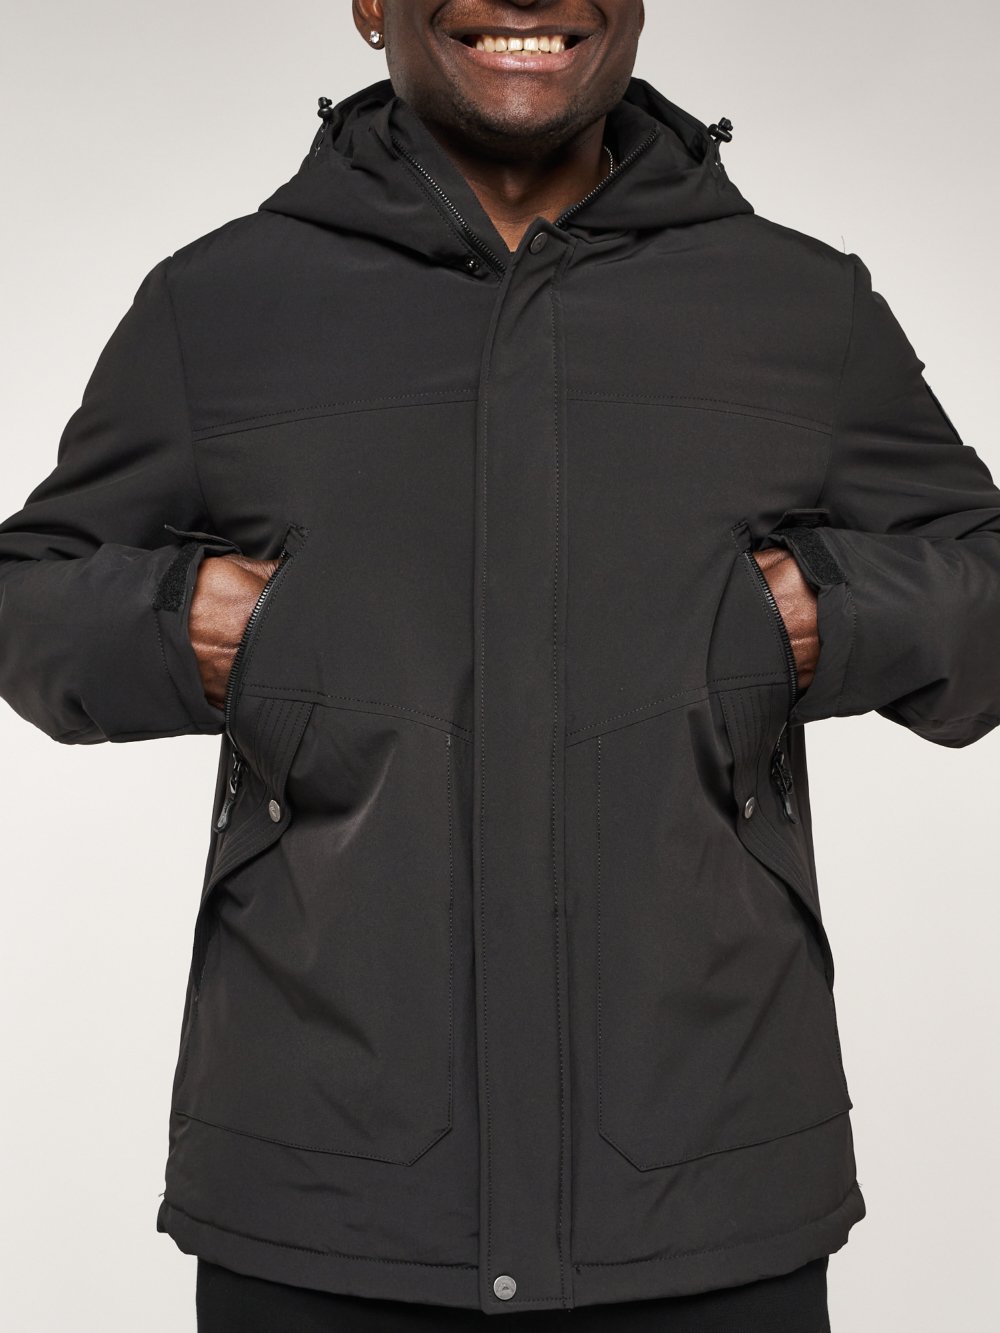 Купить куртку мужскую спортивную весеннюю оптом от производителя недорого в Москве 2332Ch 1